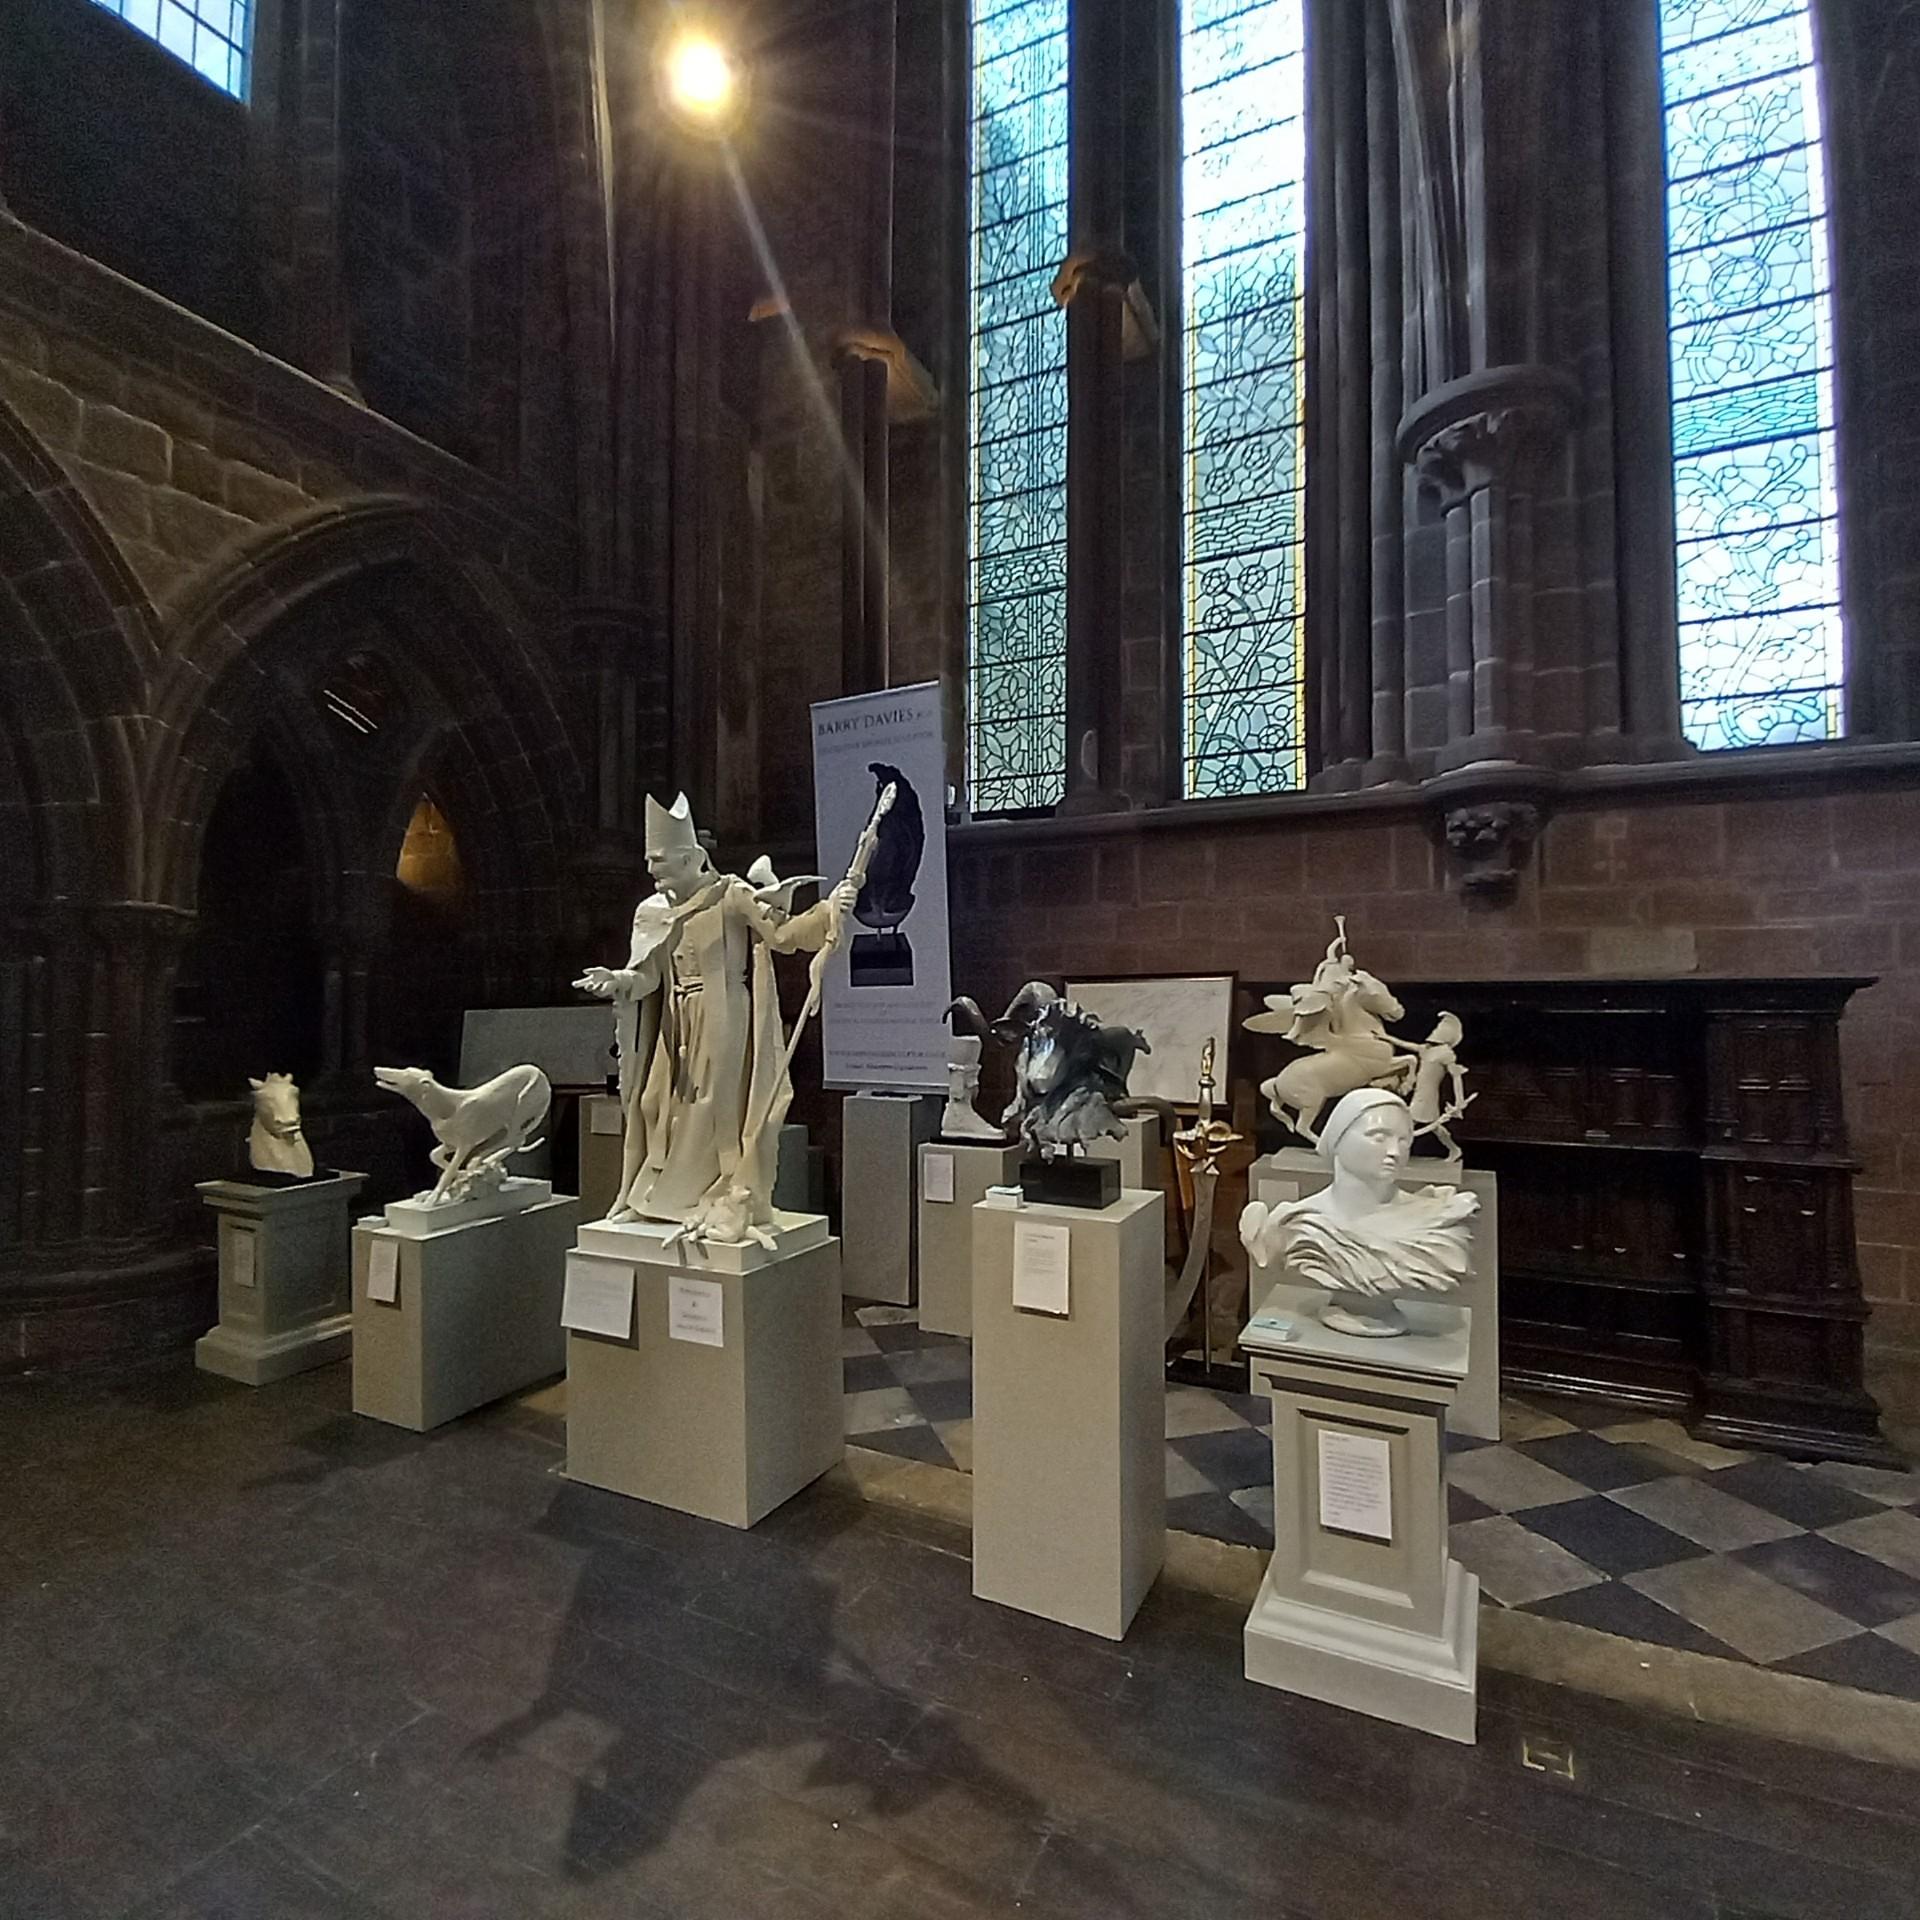 Jeanne d'Arc ist hier in einer Einzelausstellung in der St. Edwards-Kapelle der Kathedrale von St. David in Südwales zu sehen. Aus einem massiven, aus Italien importierten Carrara-Marmorblock handgeschnitzt, verwendete Davies traditionelle